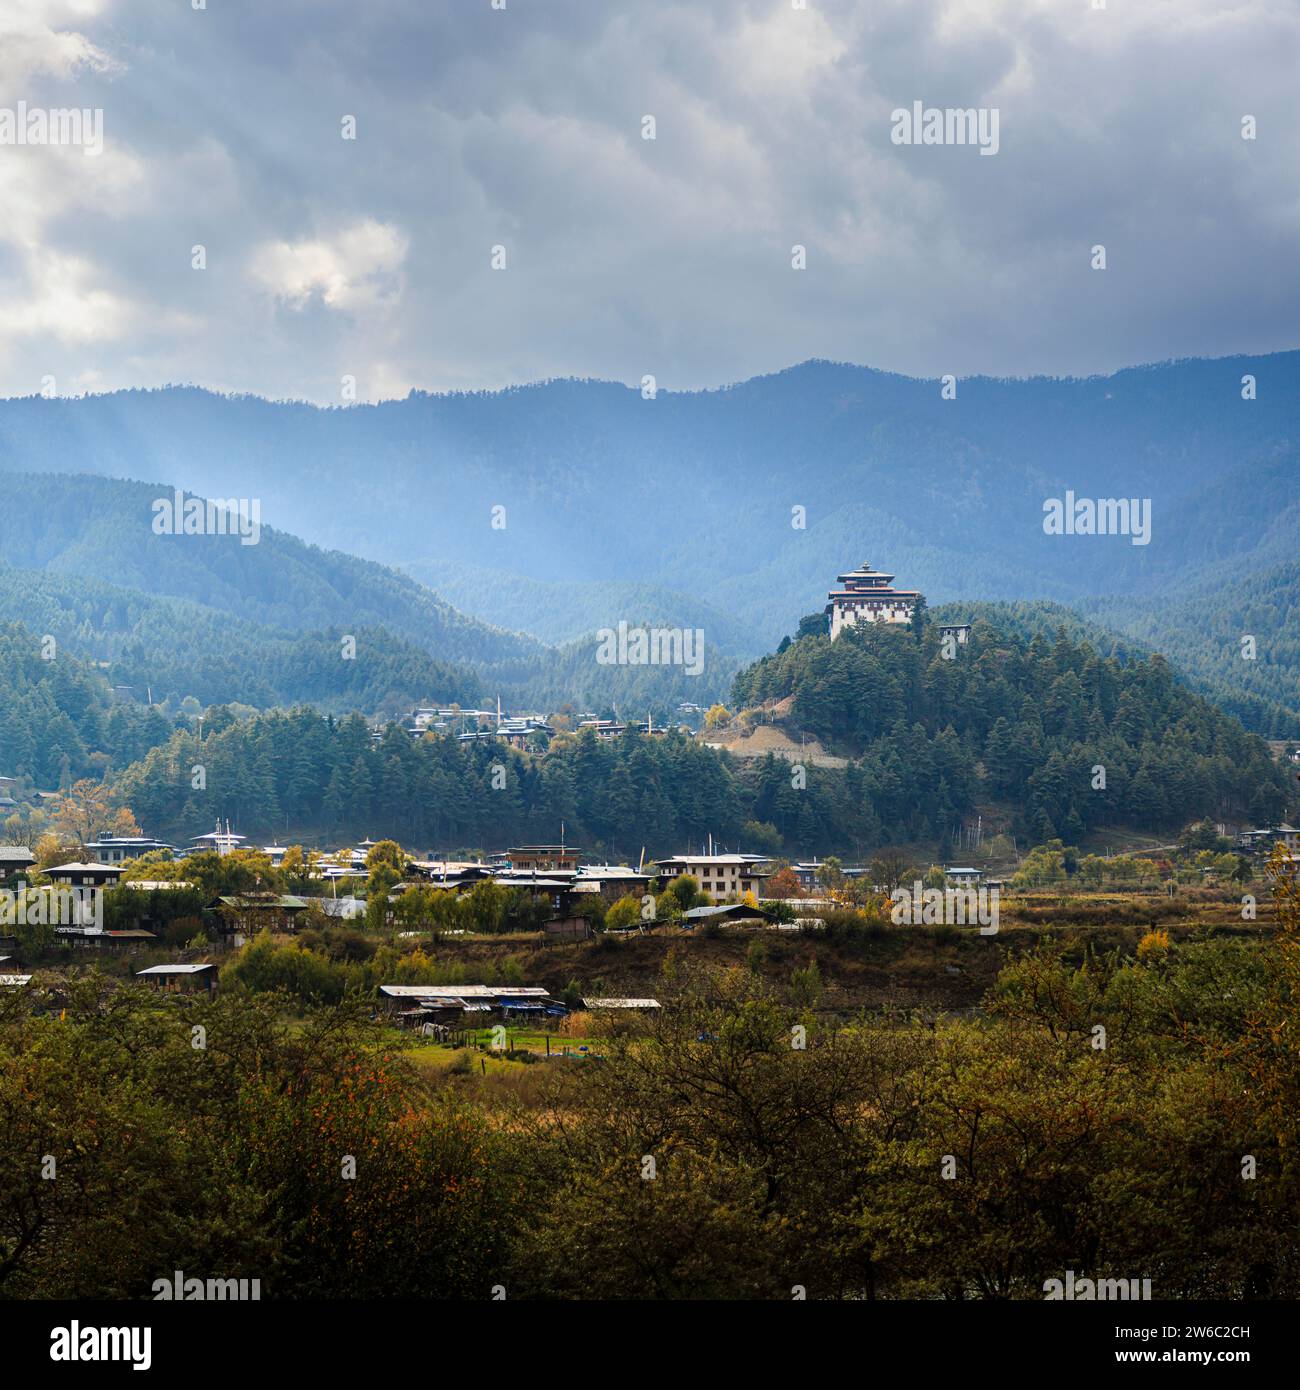 La forteresse et le monastère himalayens, Jakar Dzong (Jakar Yugyal Dzong), Jakar dans la vallée de Bumthang, au centre-est du Bhoutan Banque D'Images